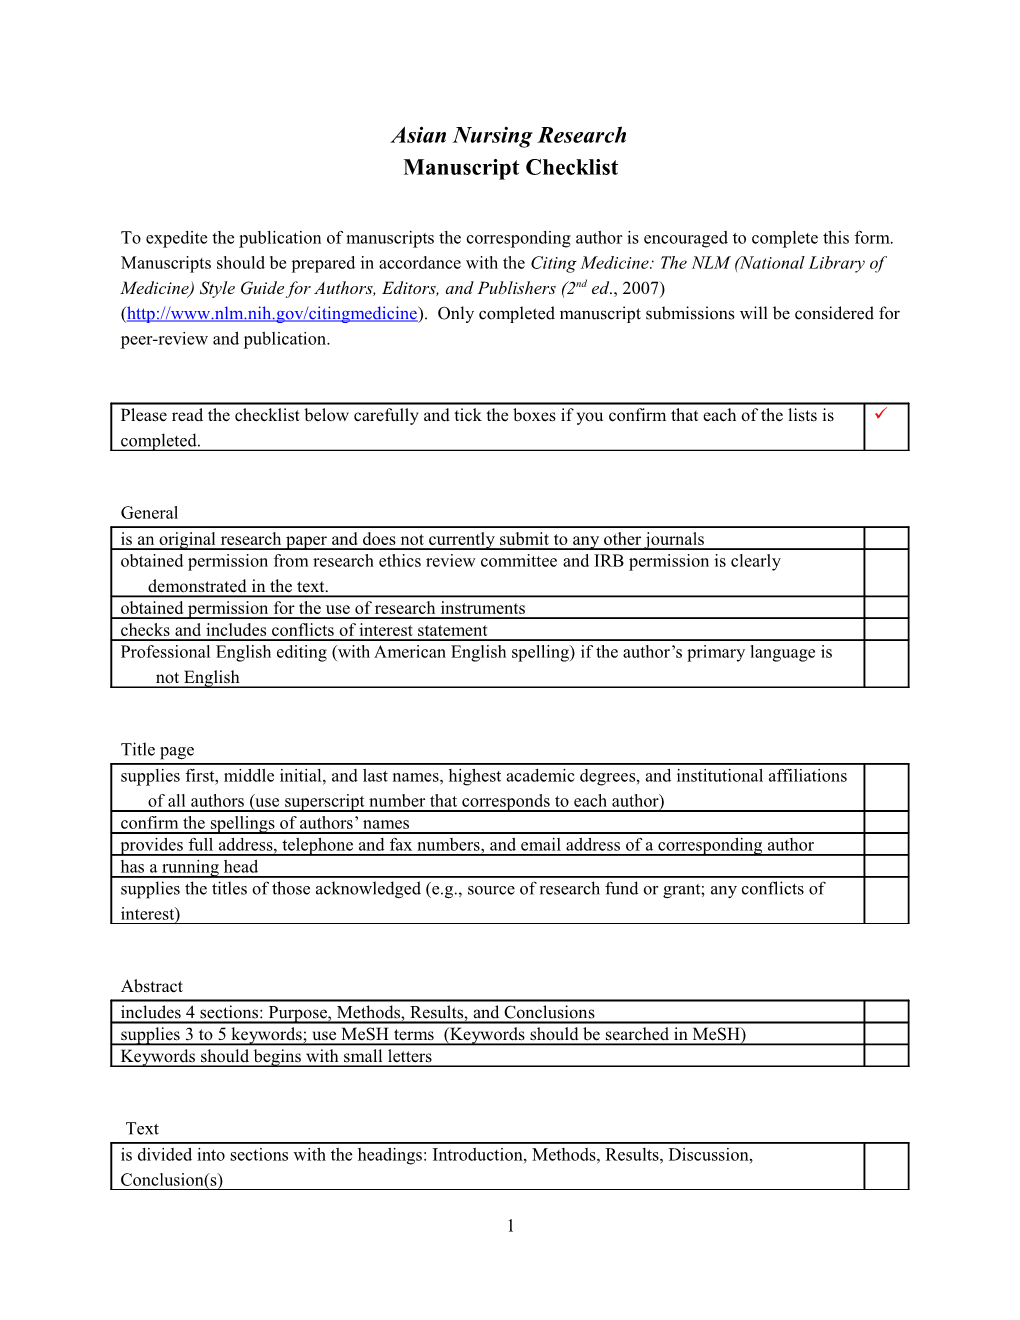 Final Manuscript Checklist